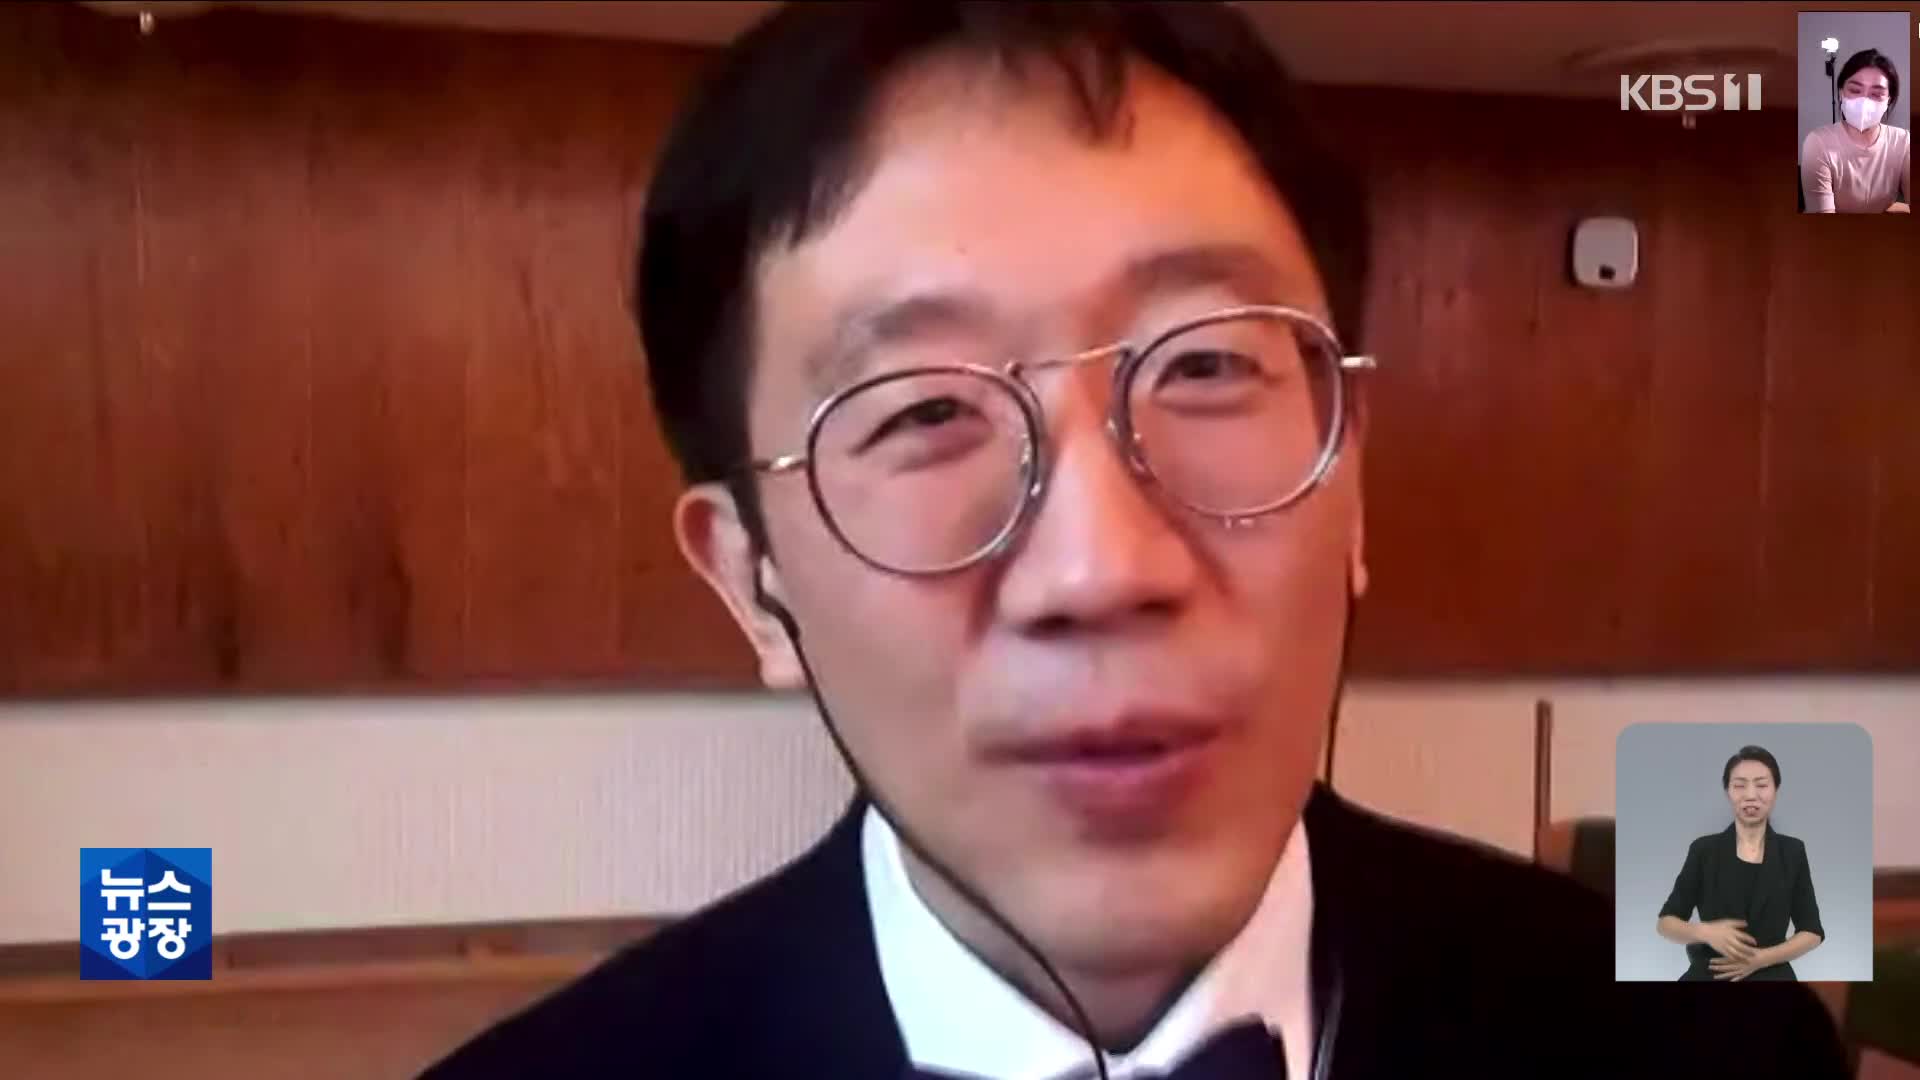 허준이 교수, ‘수학 노벨상’ 필즈상 한국계 첫 수상